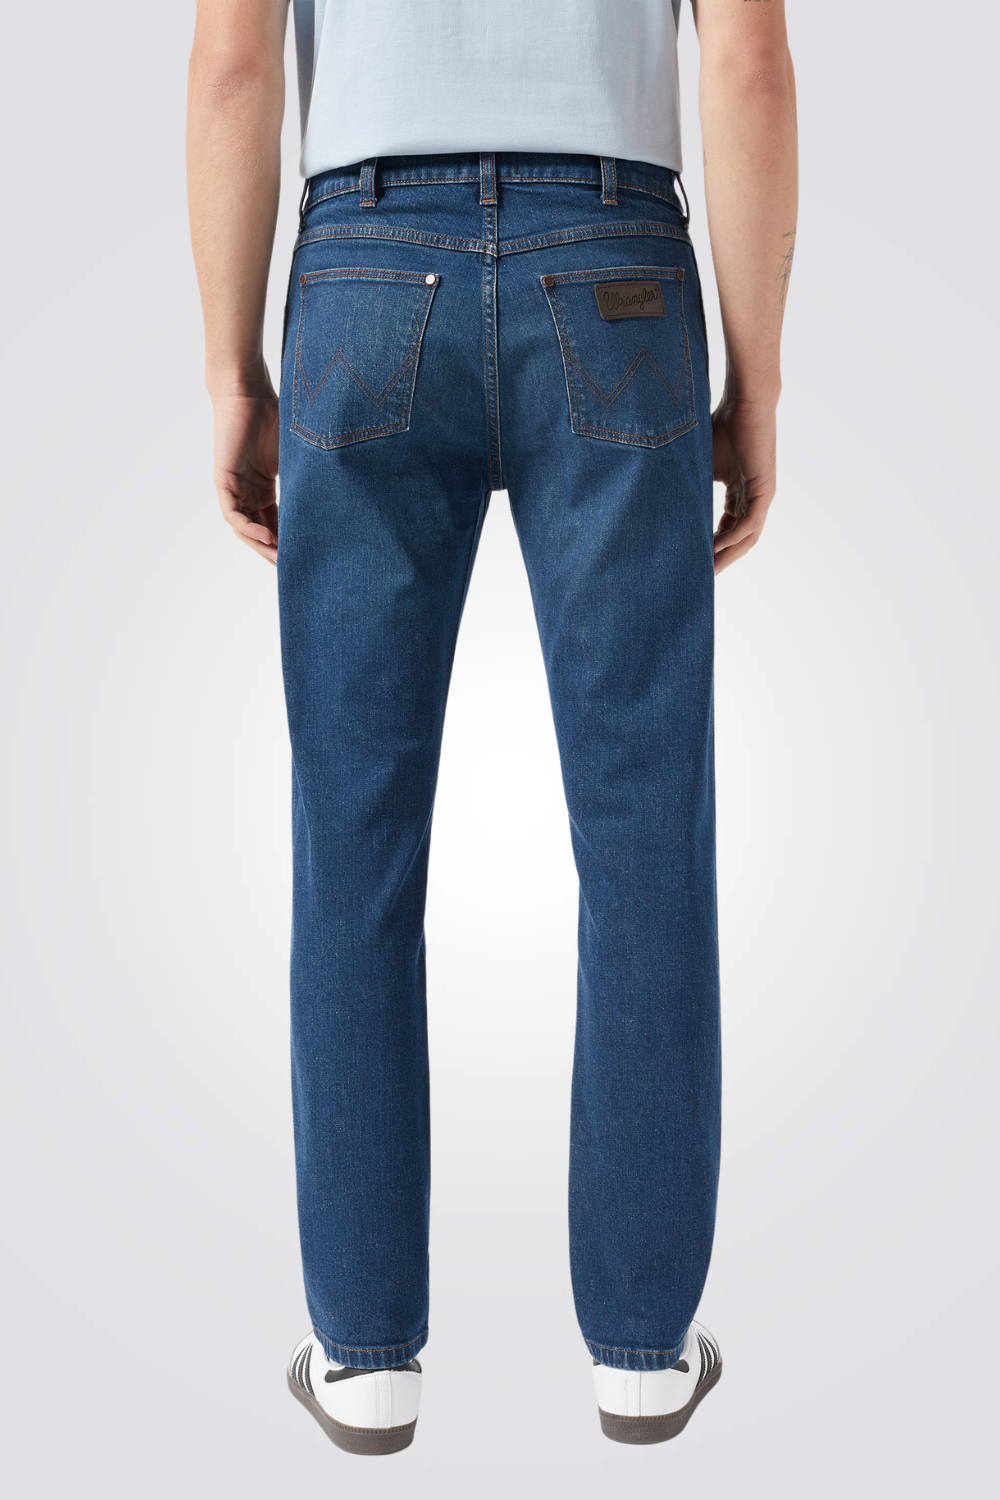 ג'ינס לגברים בצבע כחול